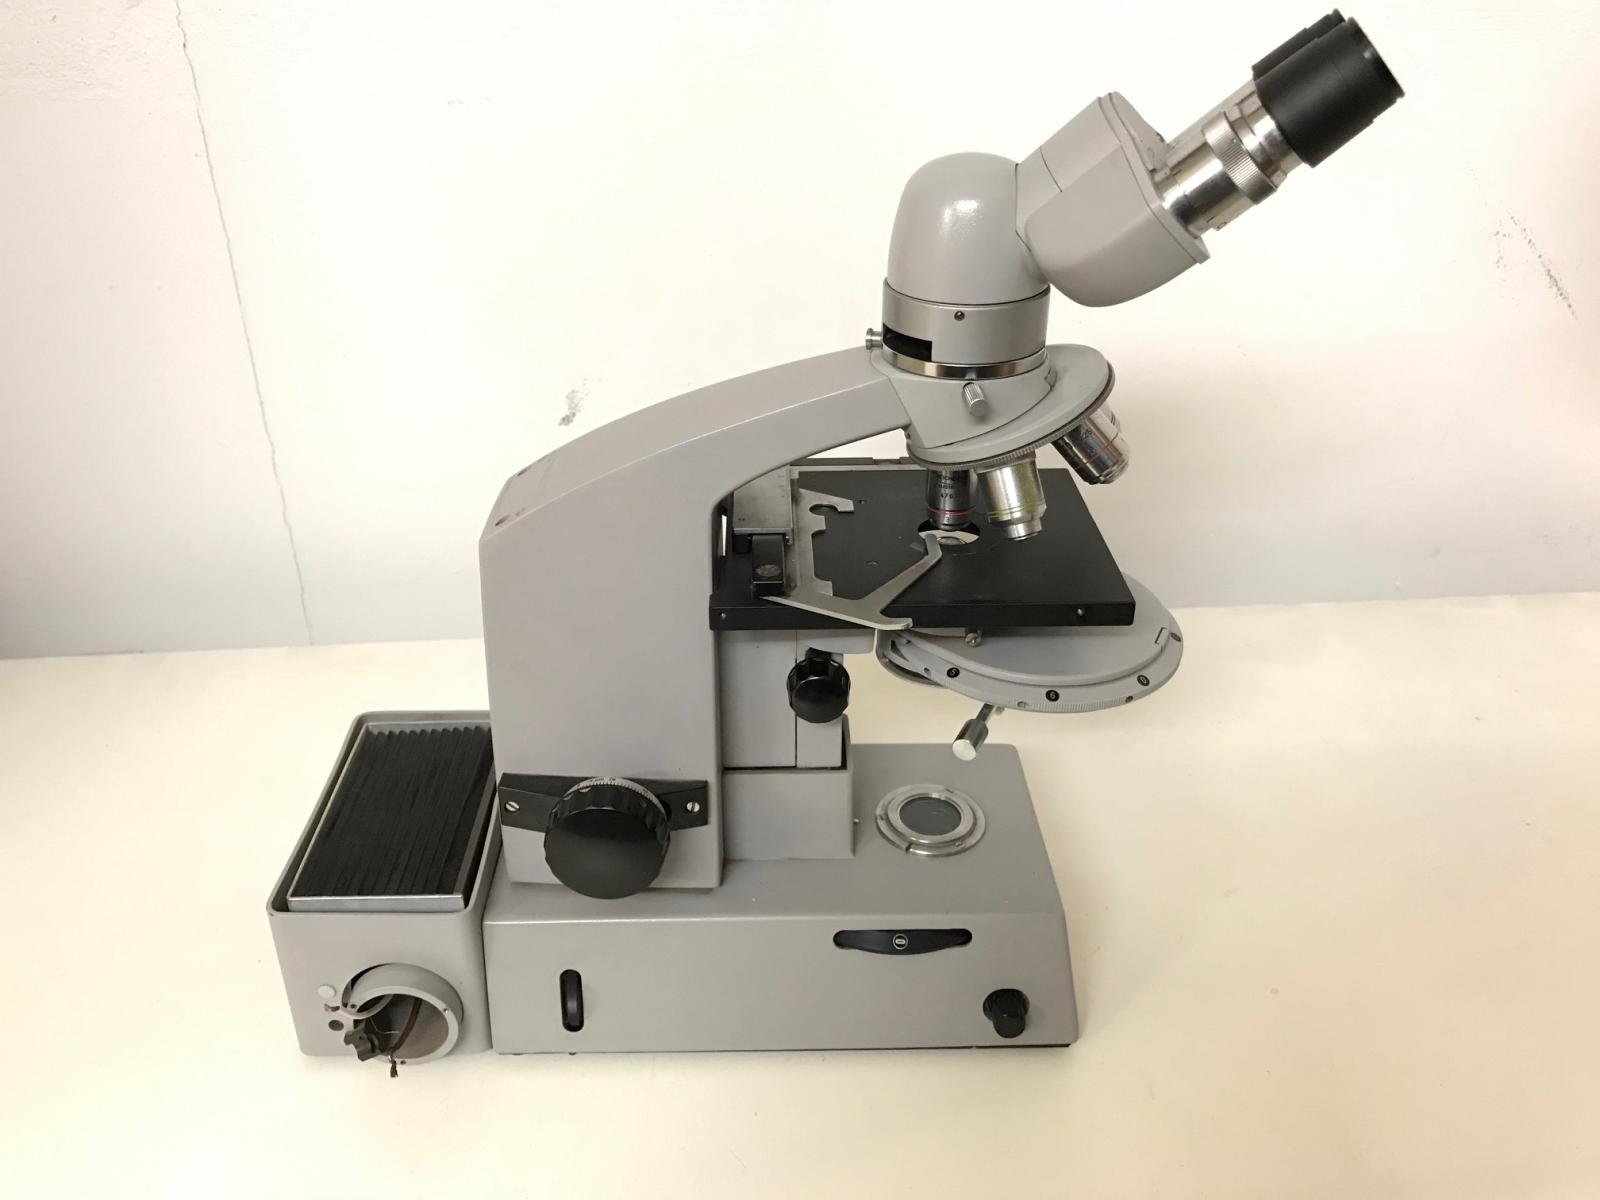 Catalogue de microscope Reichert La Microdurete 1964  Mikroskop micro hardness 